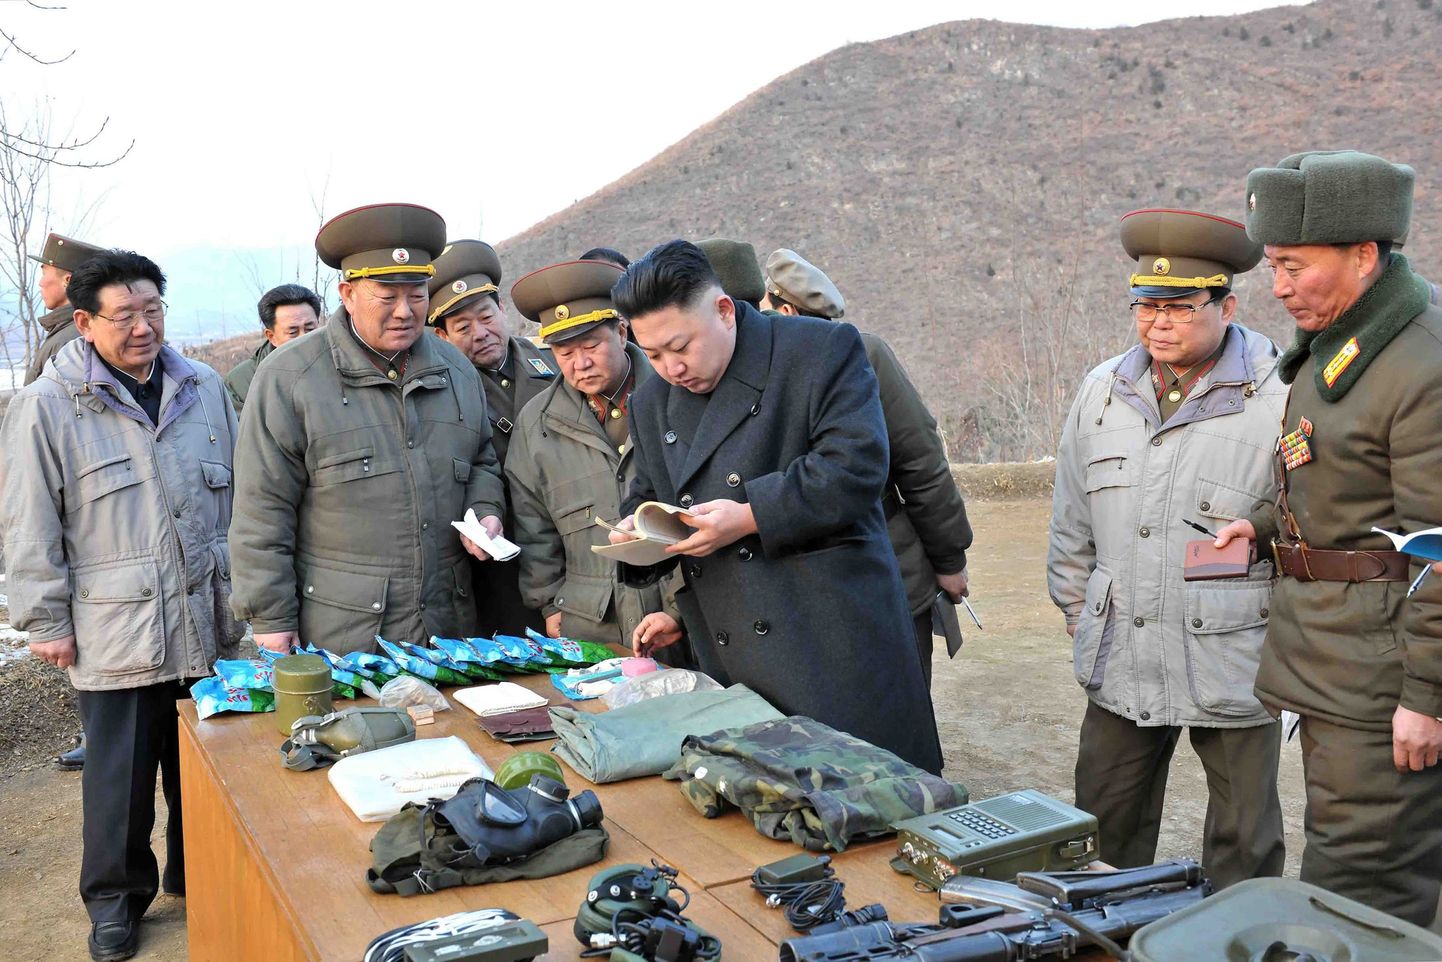 ÜRO uued sanktsioonid jätavad põhjakorealased luksuskaupadest ilma. Fotol Põhja-Korea juht Kim Jong-un (kesekel) inspekteerimas sõjaväelastele kuuluvaid esemeid